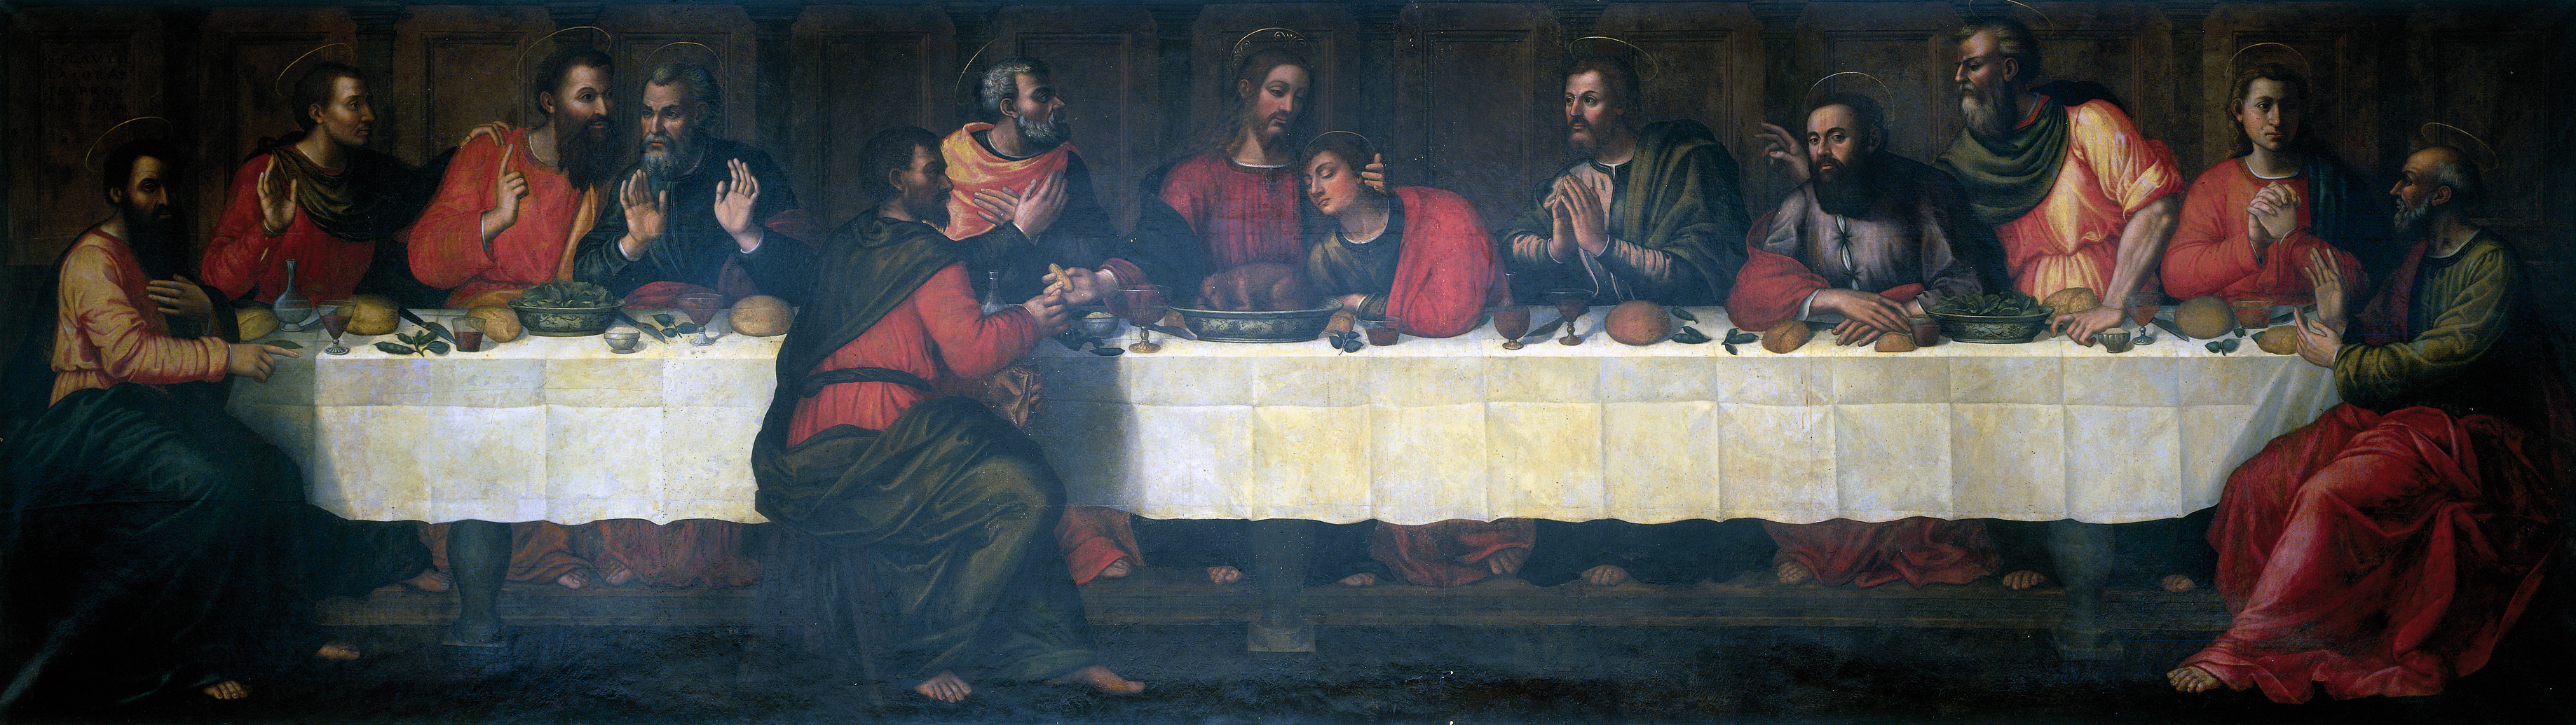 최후의 만찬 (Ultimate Supper) by Plautilla Nelli - 16세기 